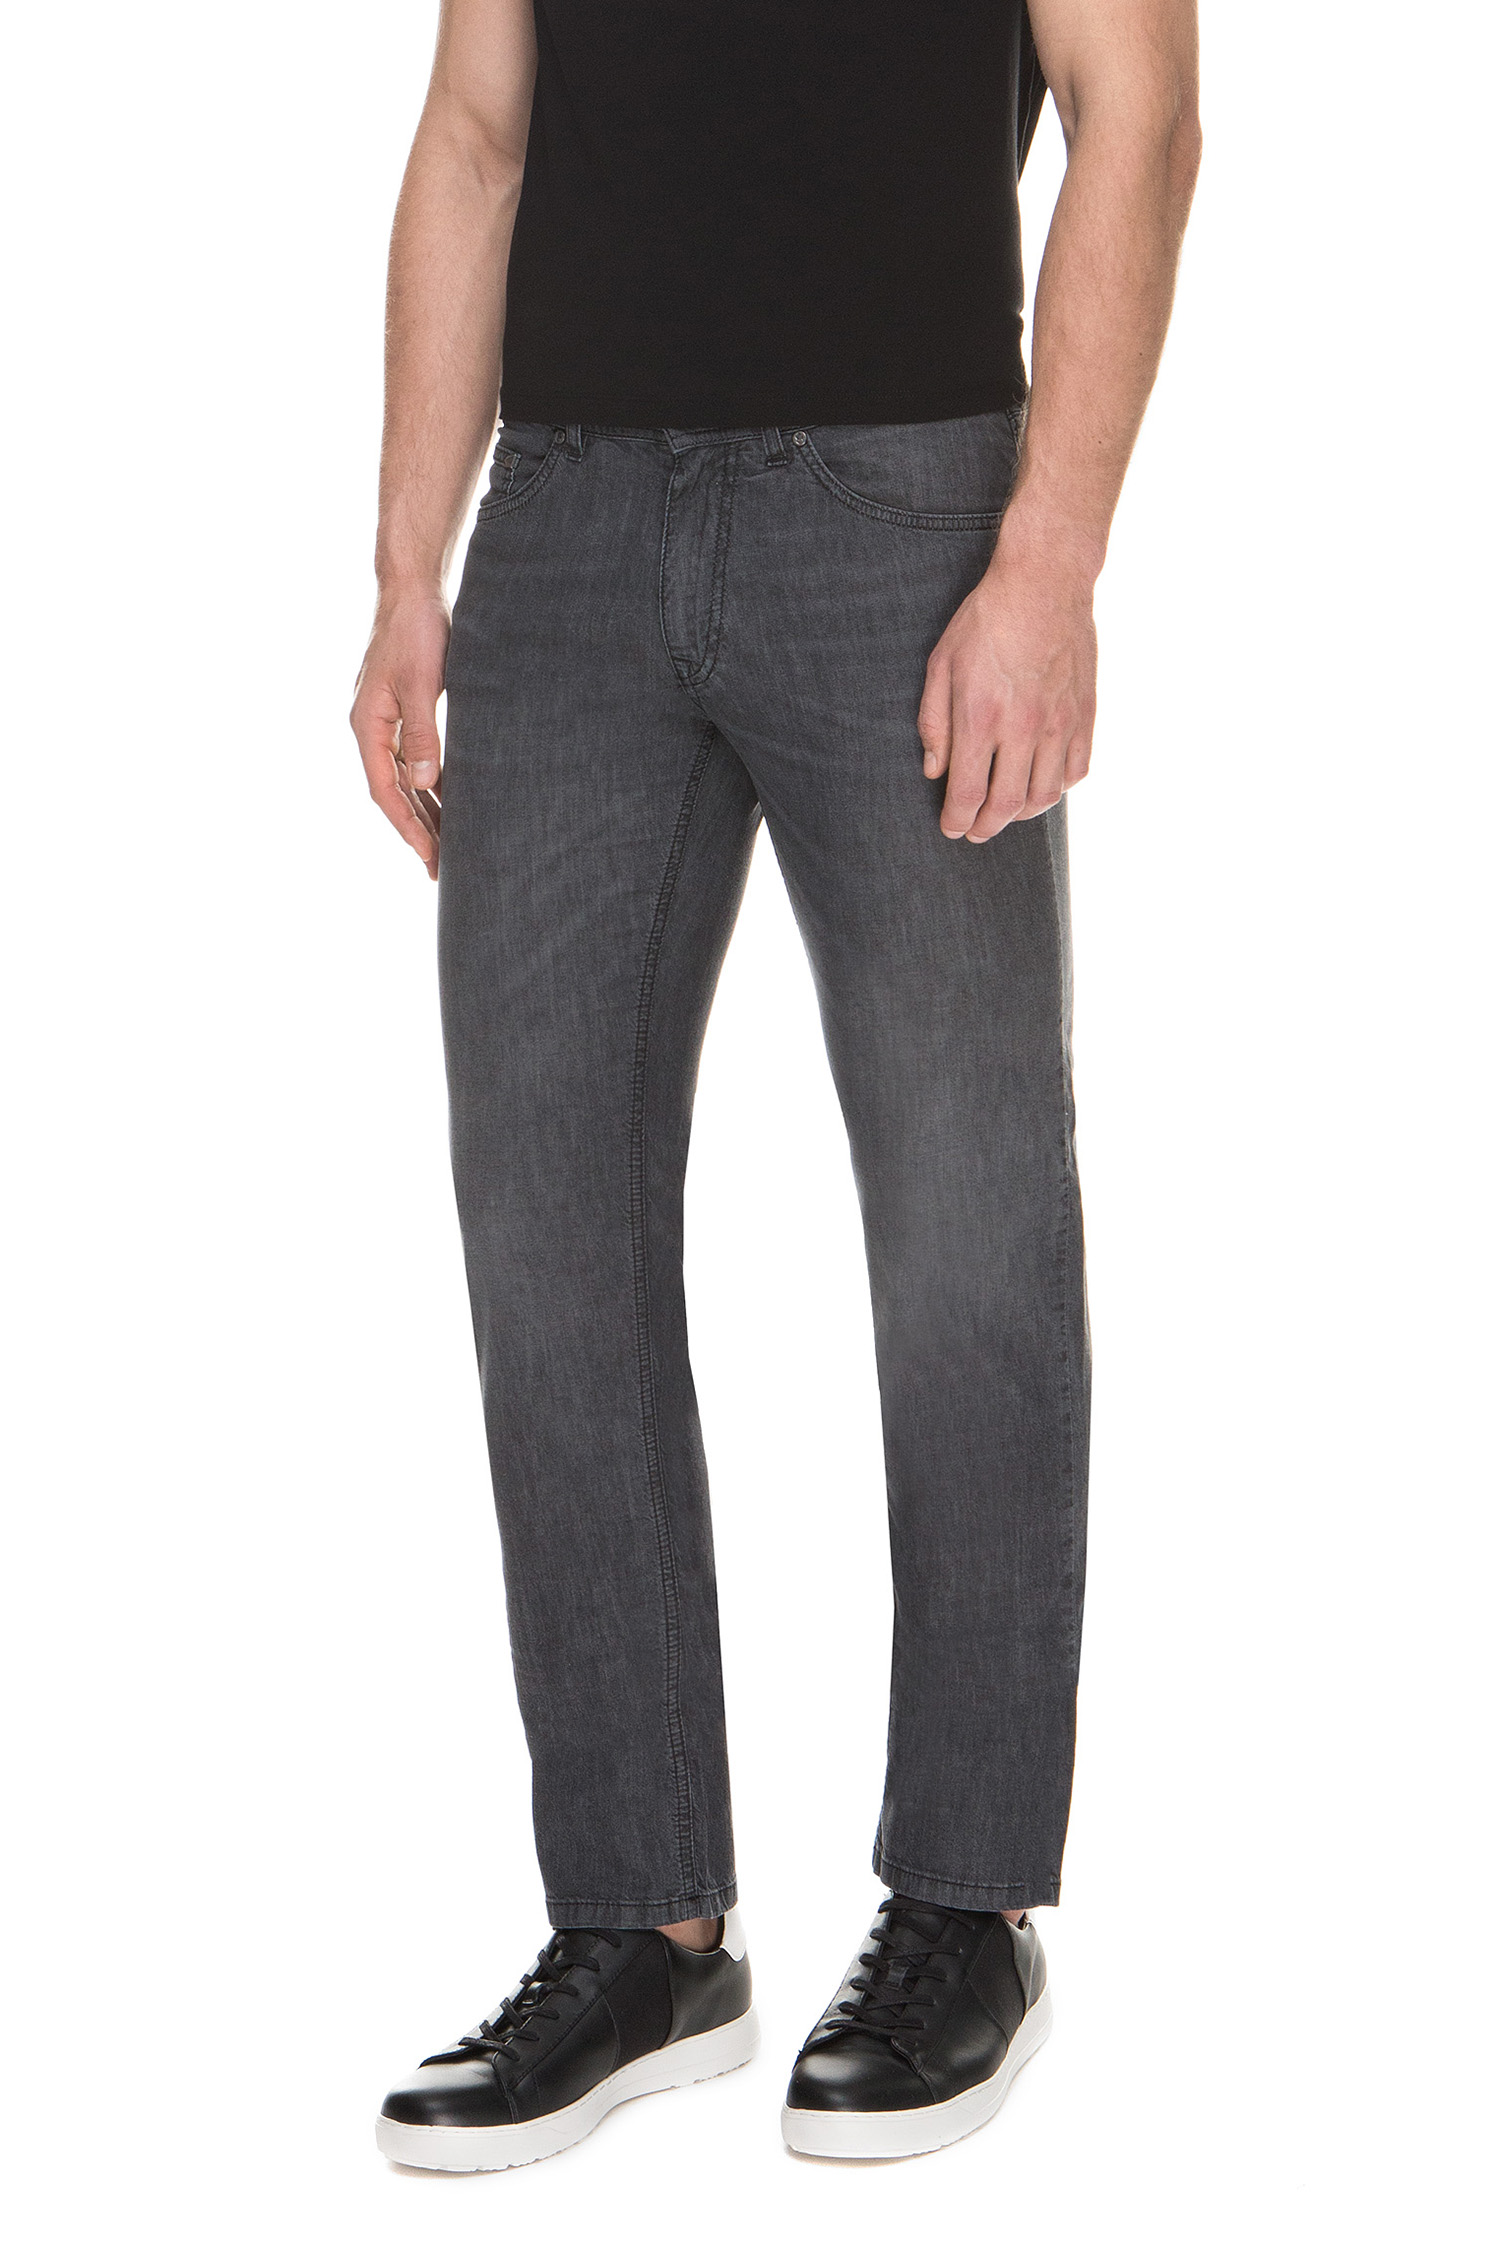 Чоловічі сірі джинси Karl Lagerfeld 591806.265840;990